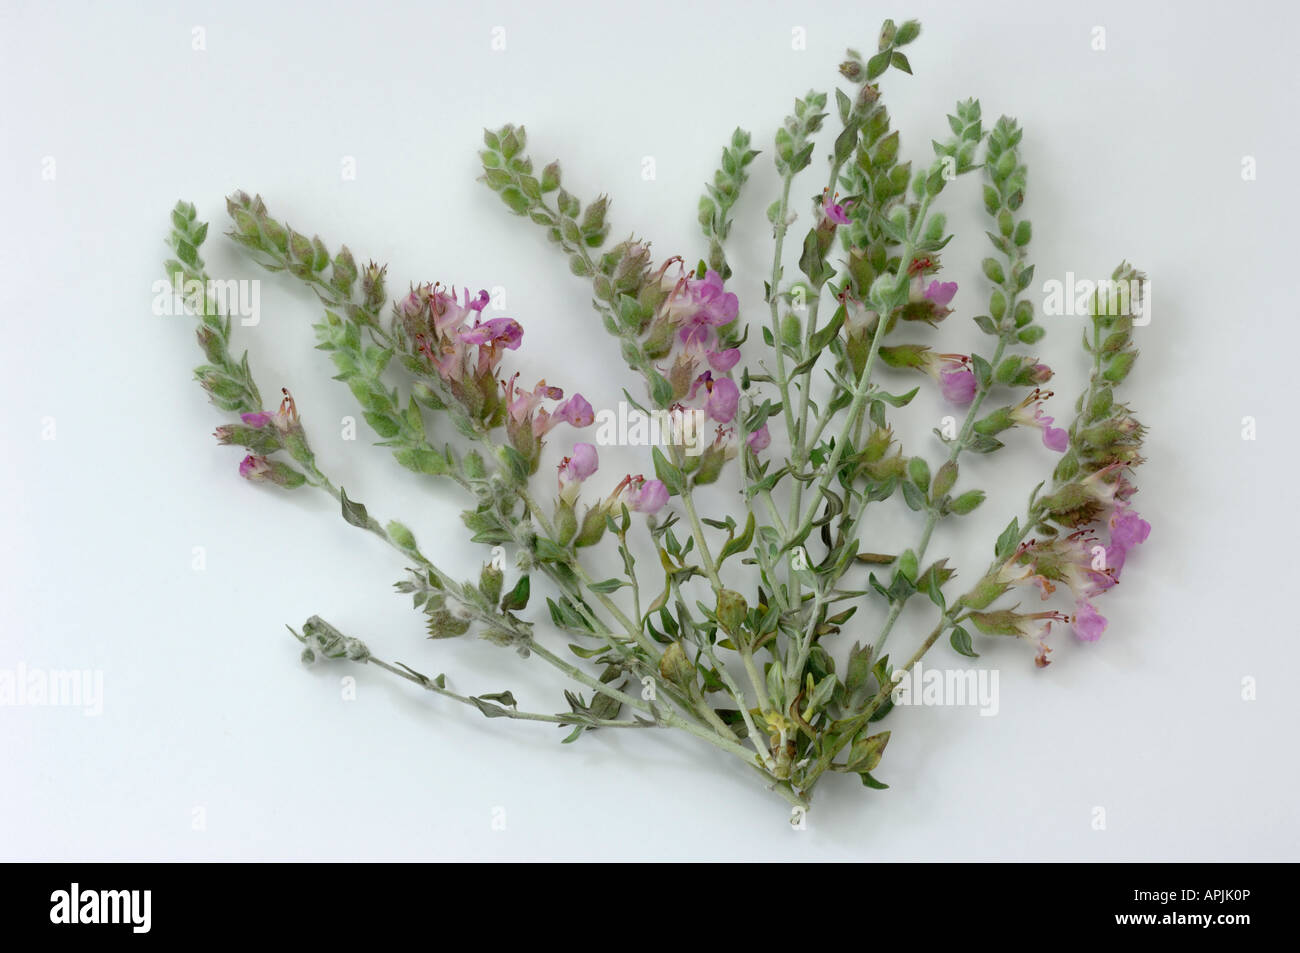 Cat Thyme Germander (Teucrium marum), flowering plant, studio picture Stock Photo